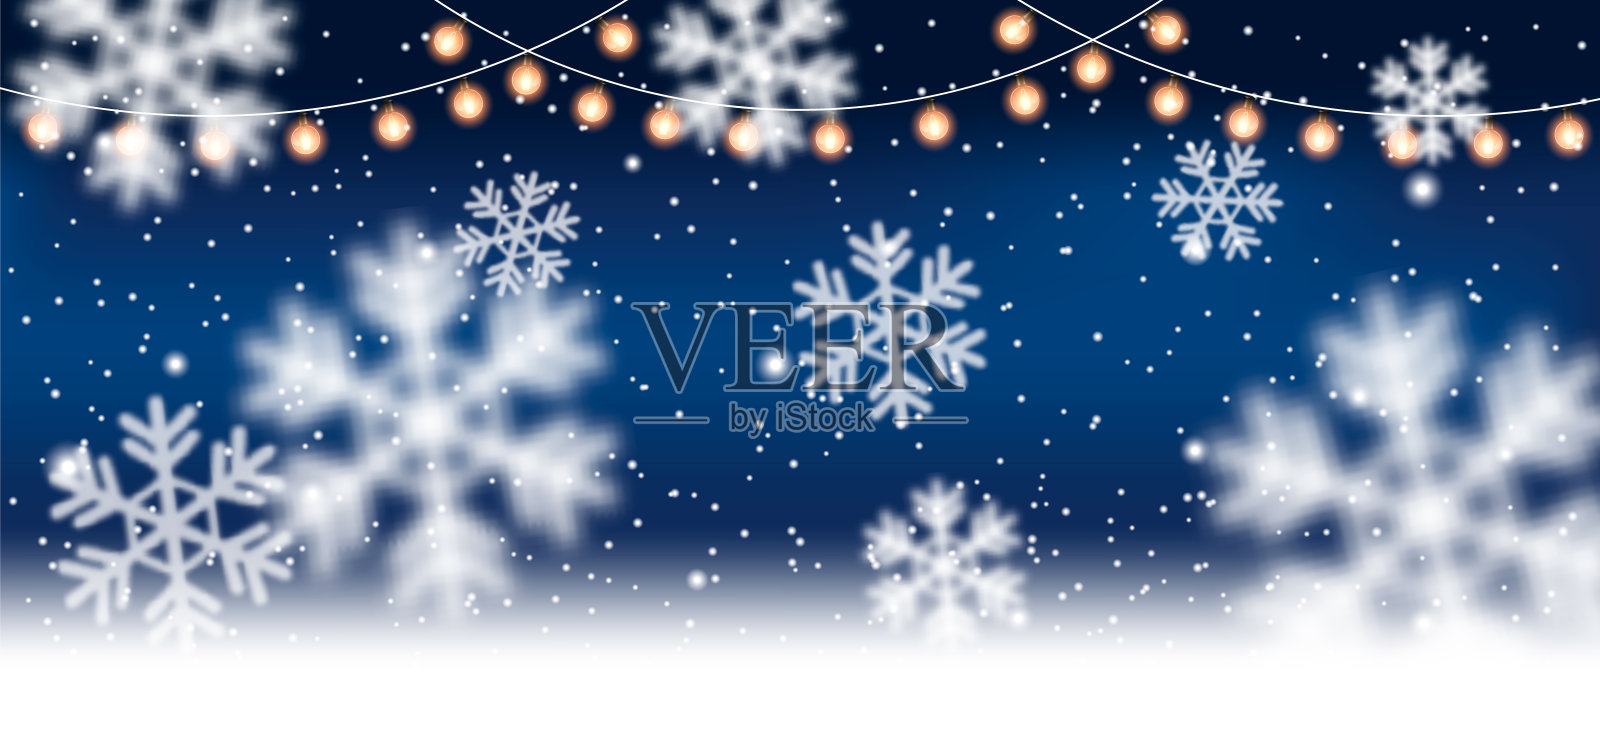 圣诞节，白雪皑皑的背景下点缀着轻盈的花环，飘落的雪花、雪花、雪堆迎来了冬天和新年的节日。矢量图插画图片素材